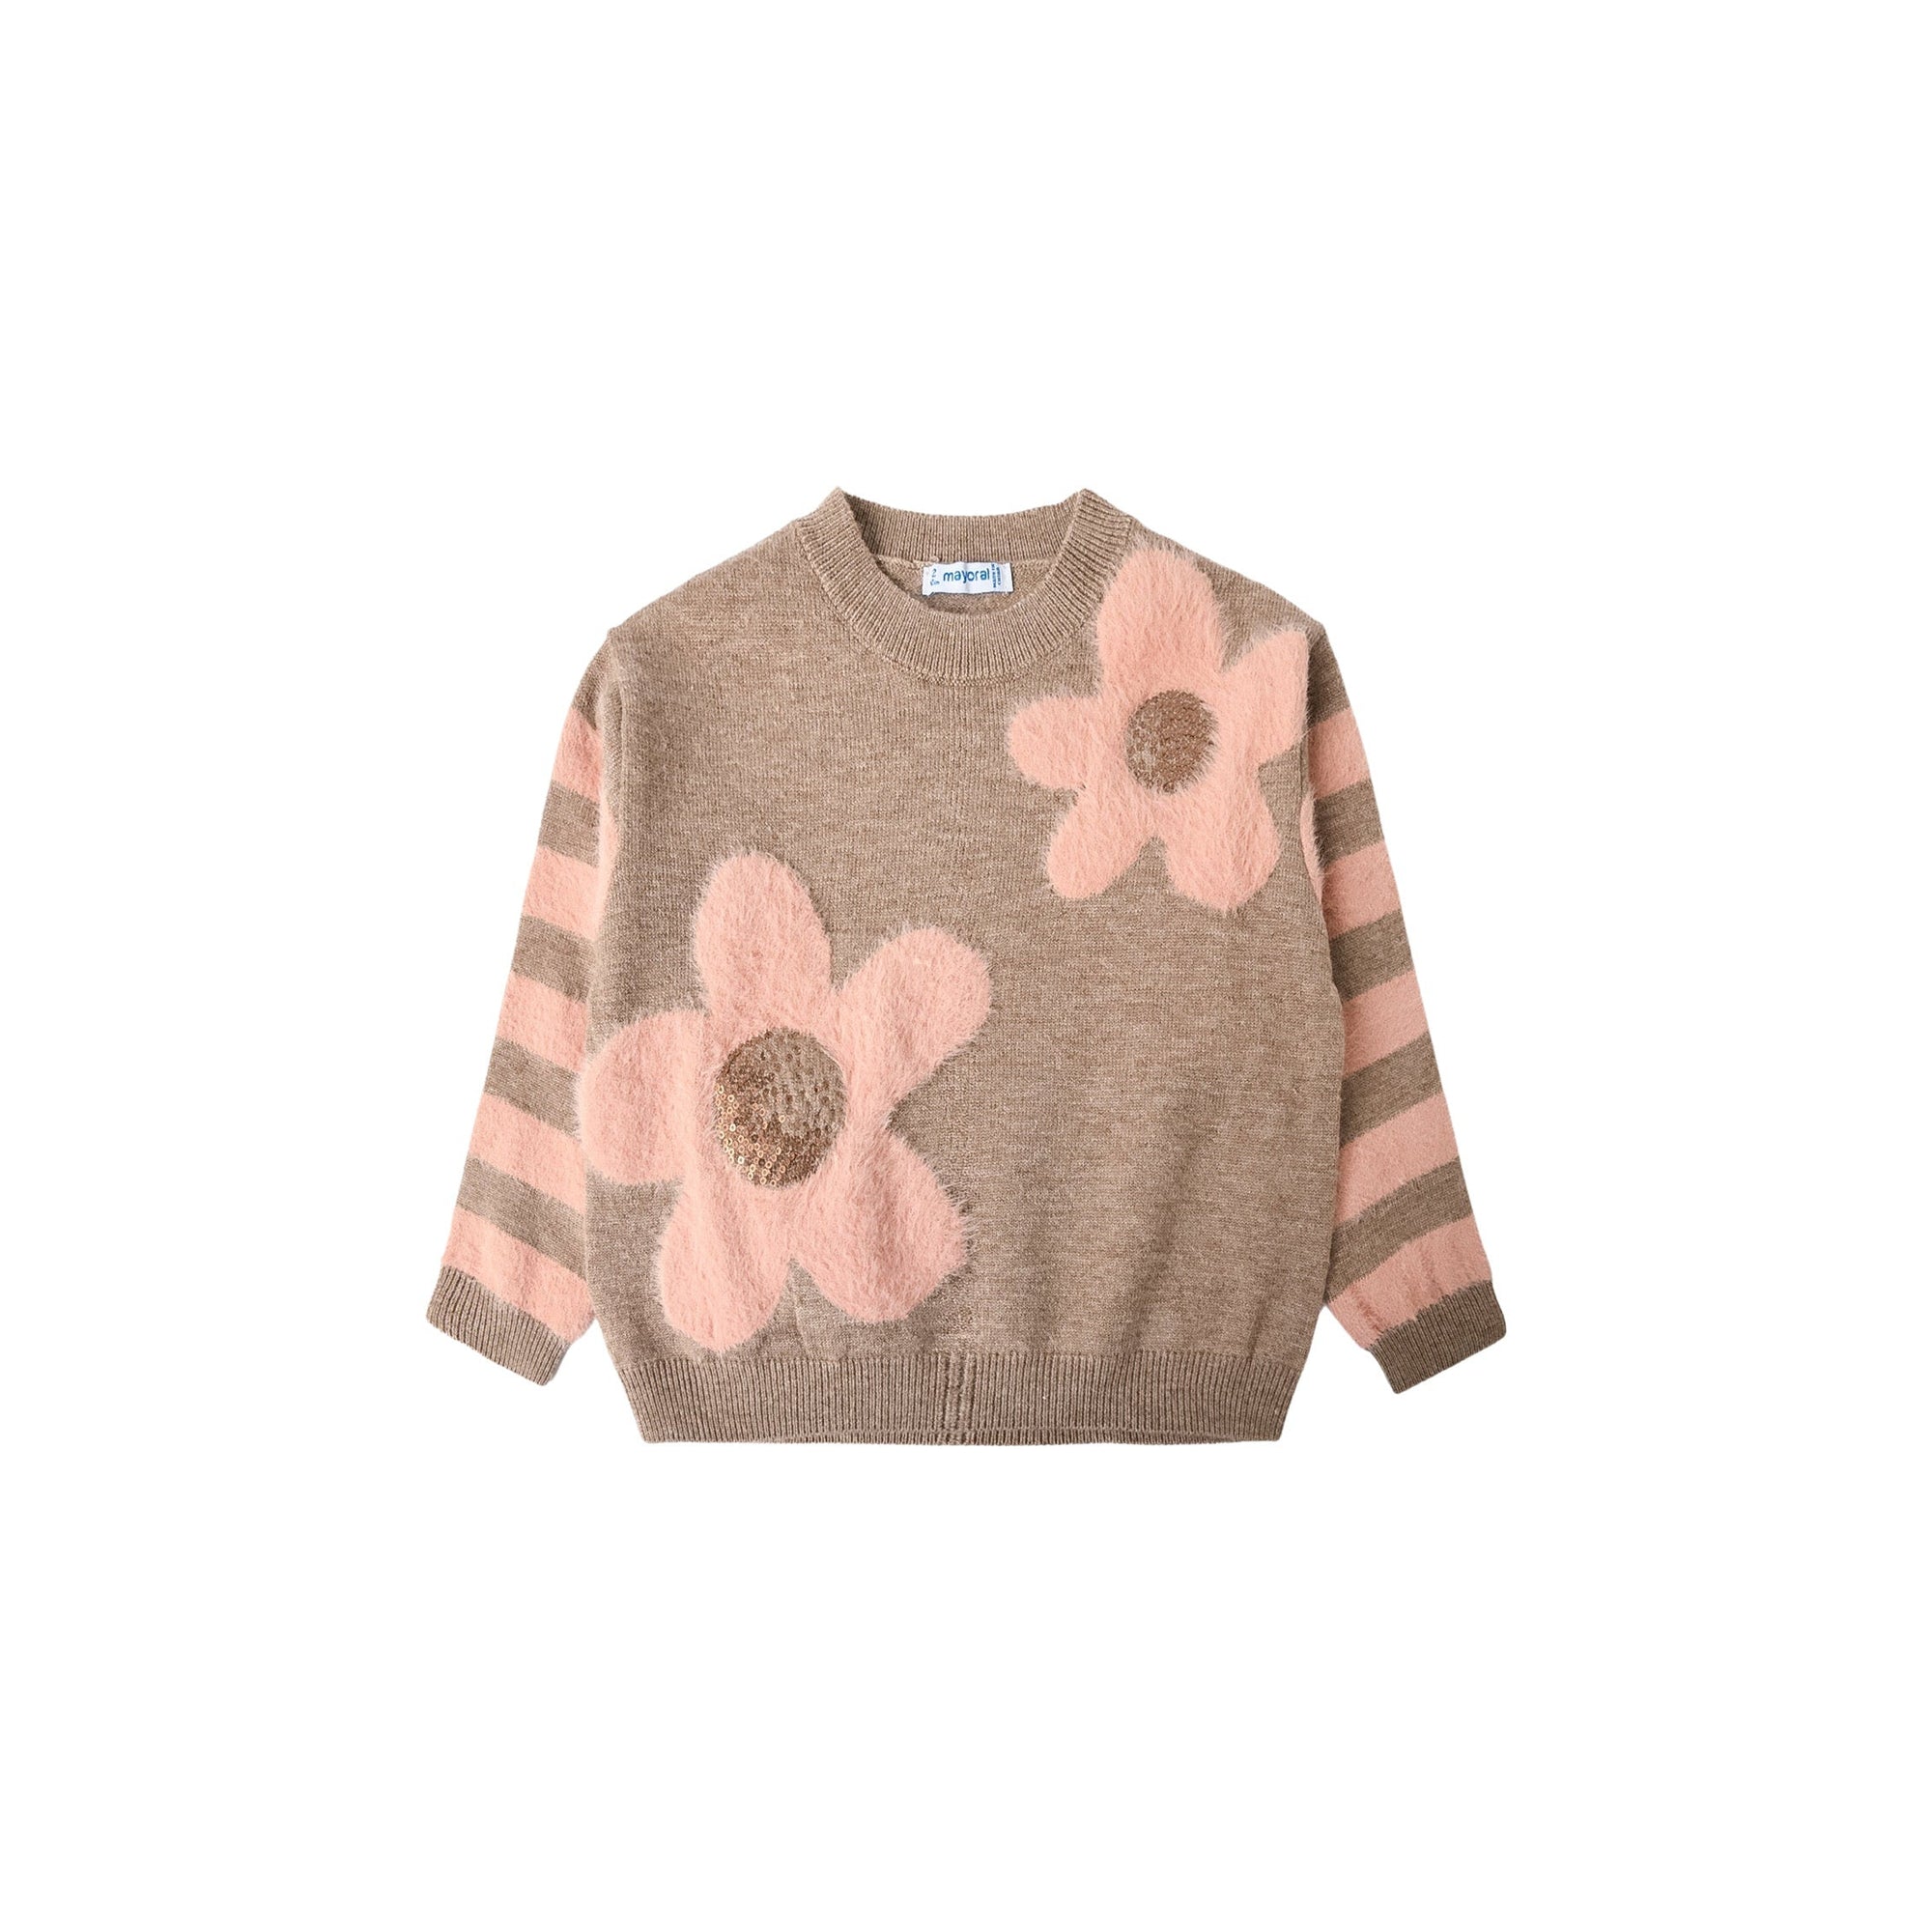 Mocha & Pink Flower Sweater